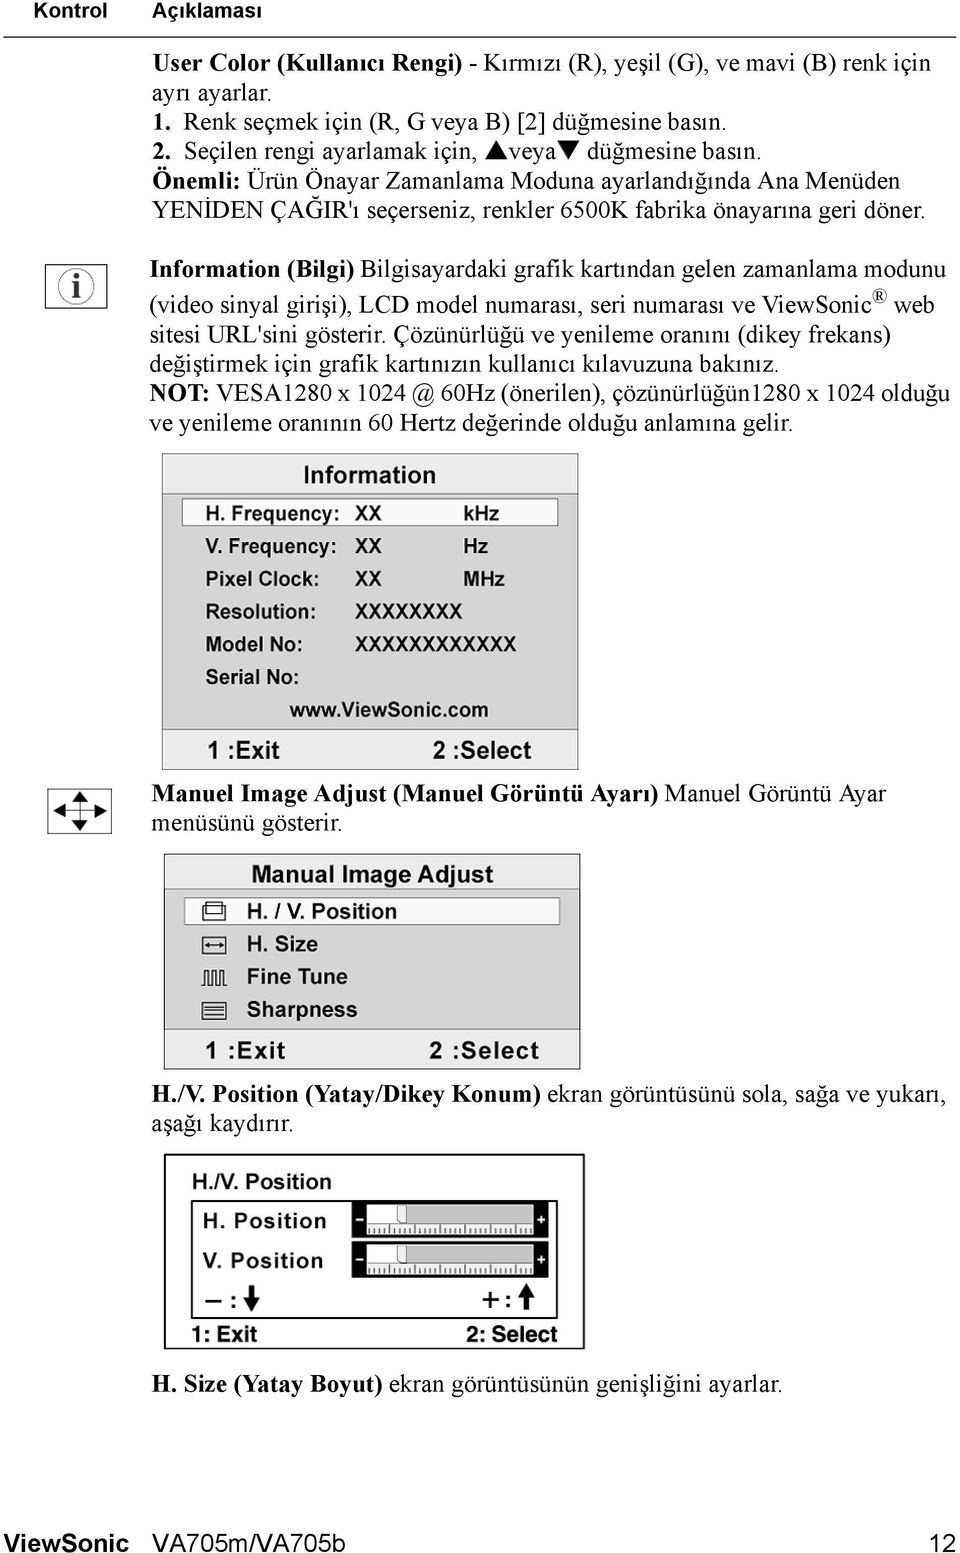 Information (Bilgi) Bilgisayardaki grafik kartından gelen zamanlama modunu (video sinyal girişi), LCD model numarası, seri numarası ve ViewSonic web sitesi URL'sini gösterir.